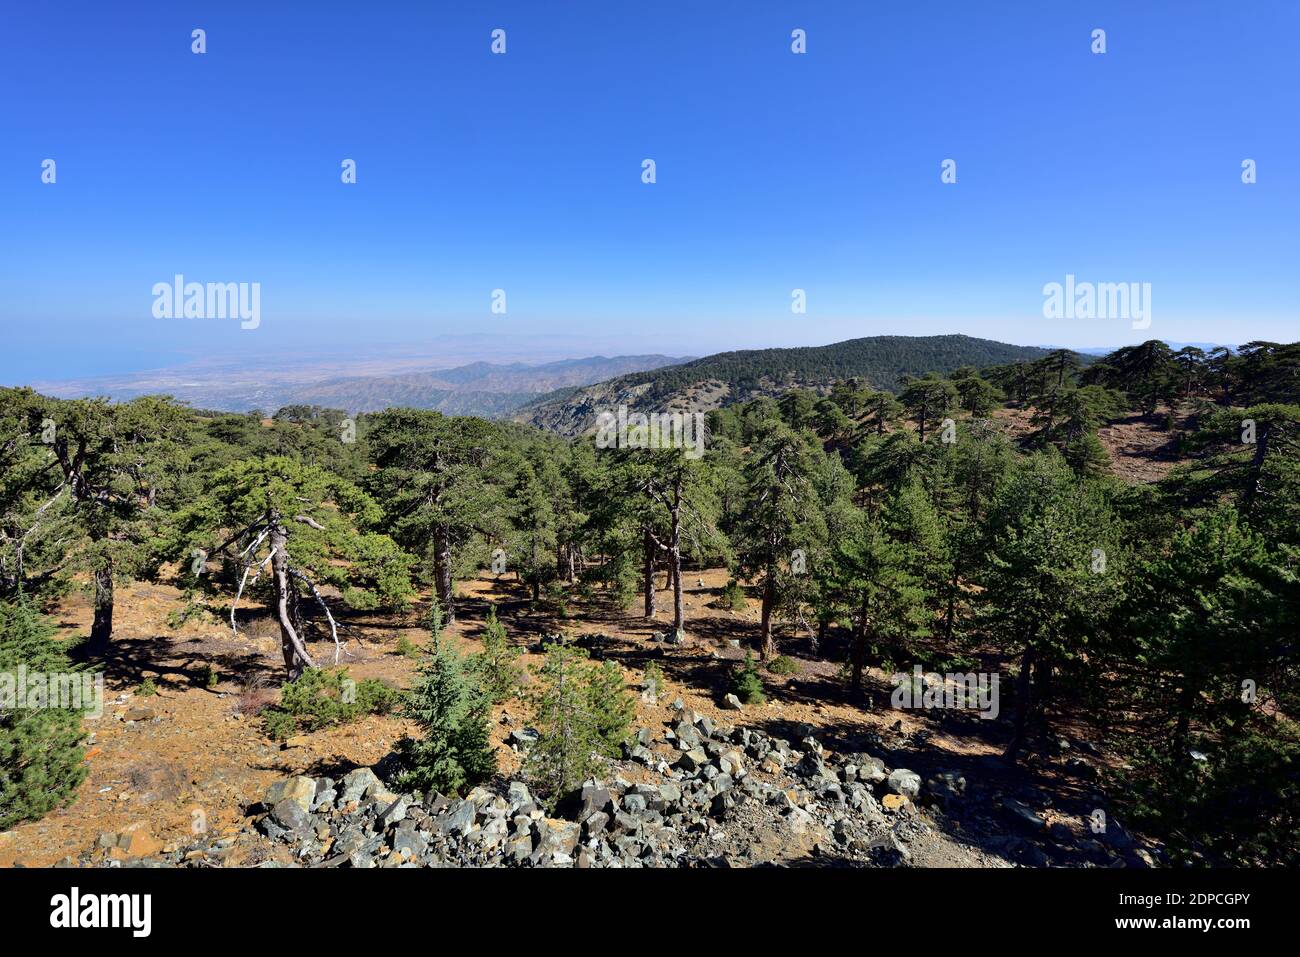 Vista sui monti Troodos parco forestale nazionale con rari pini Pinus nigra protetti, Cipro Foto Stock